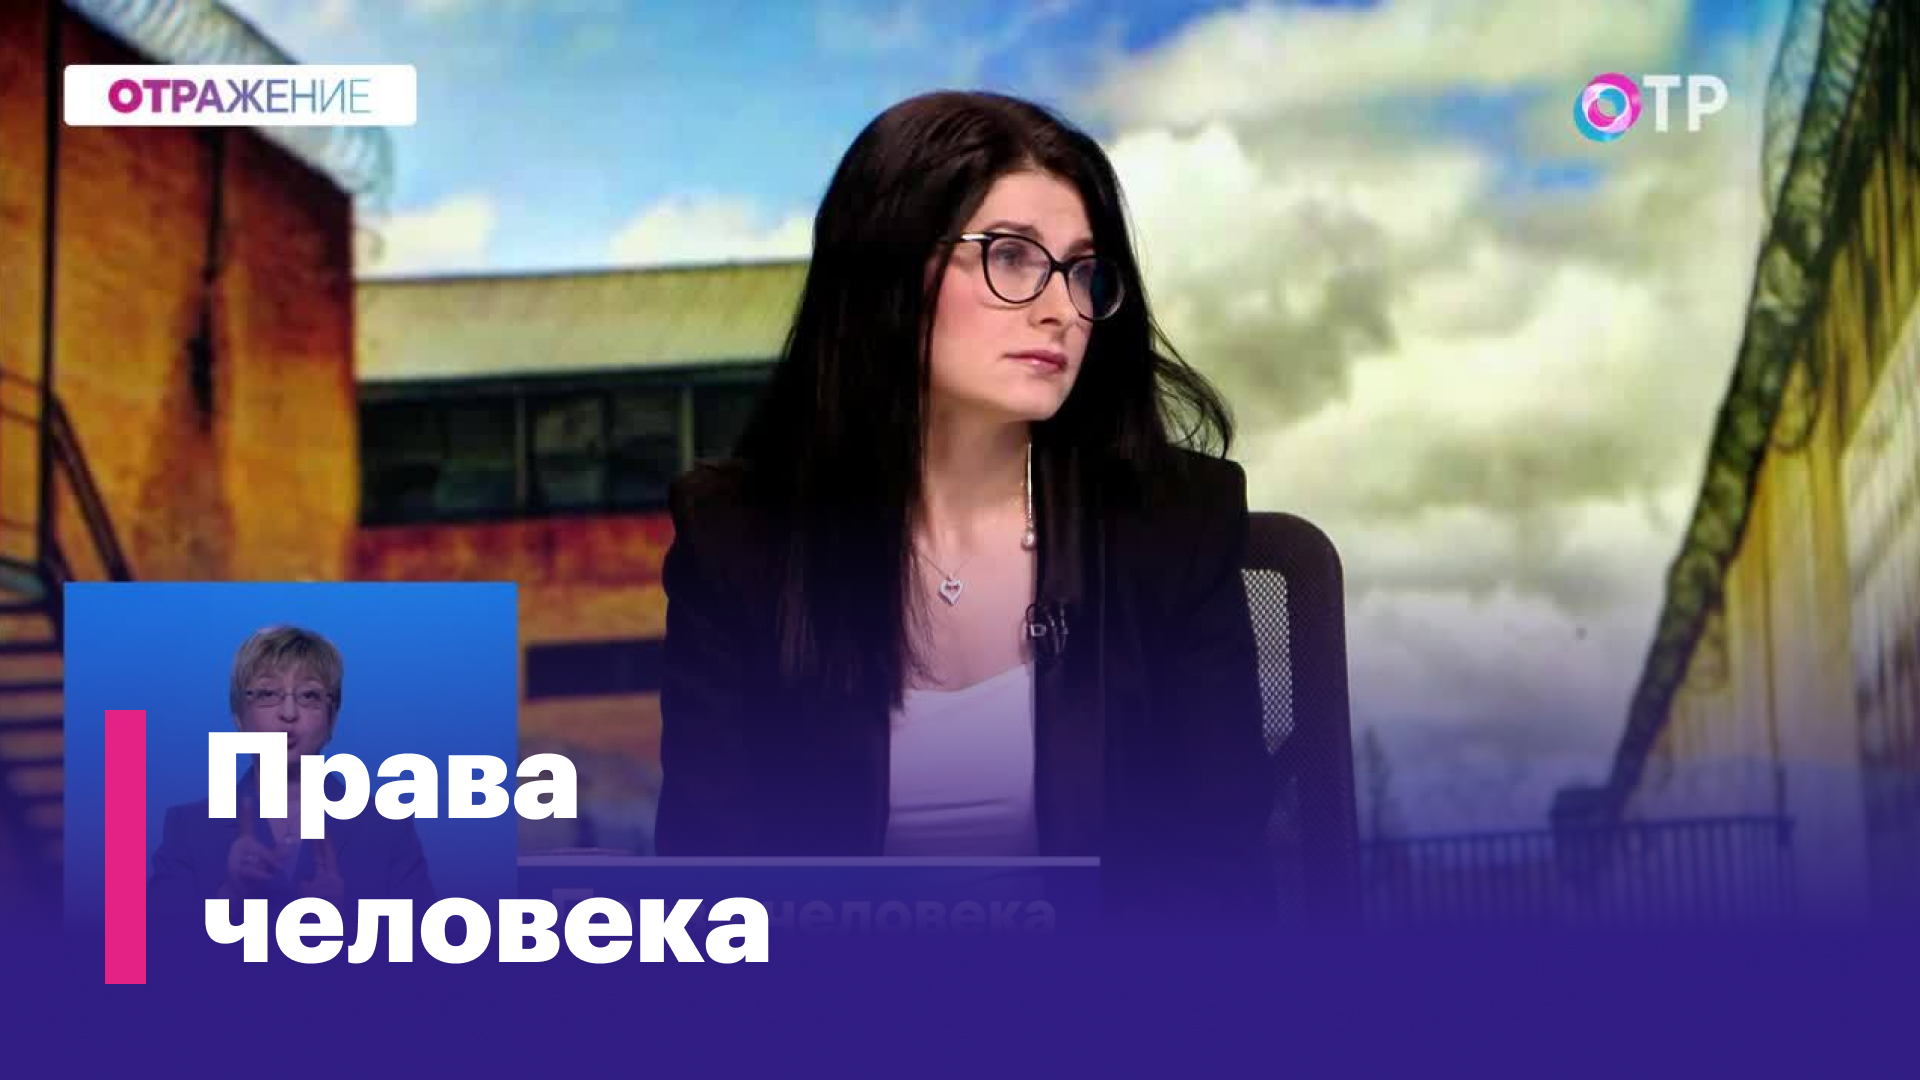 Ева Меркачёва: Женщины очень редко совершают преступления, они обычно делают это, будучи под гнетом